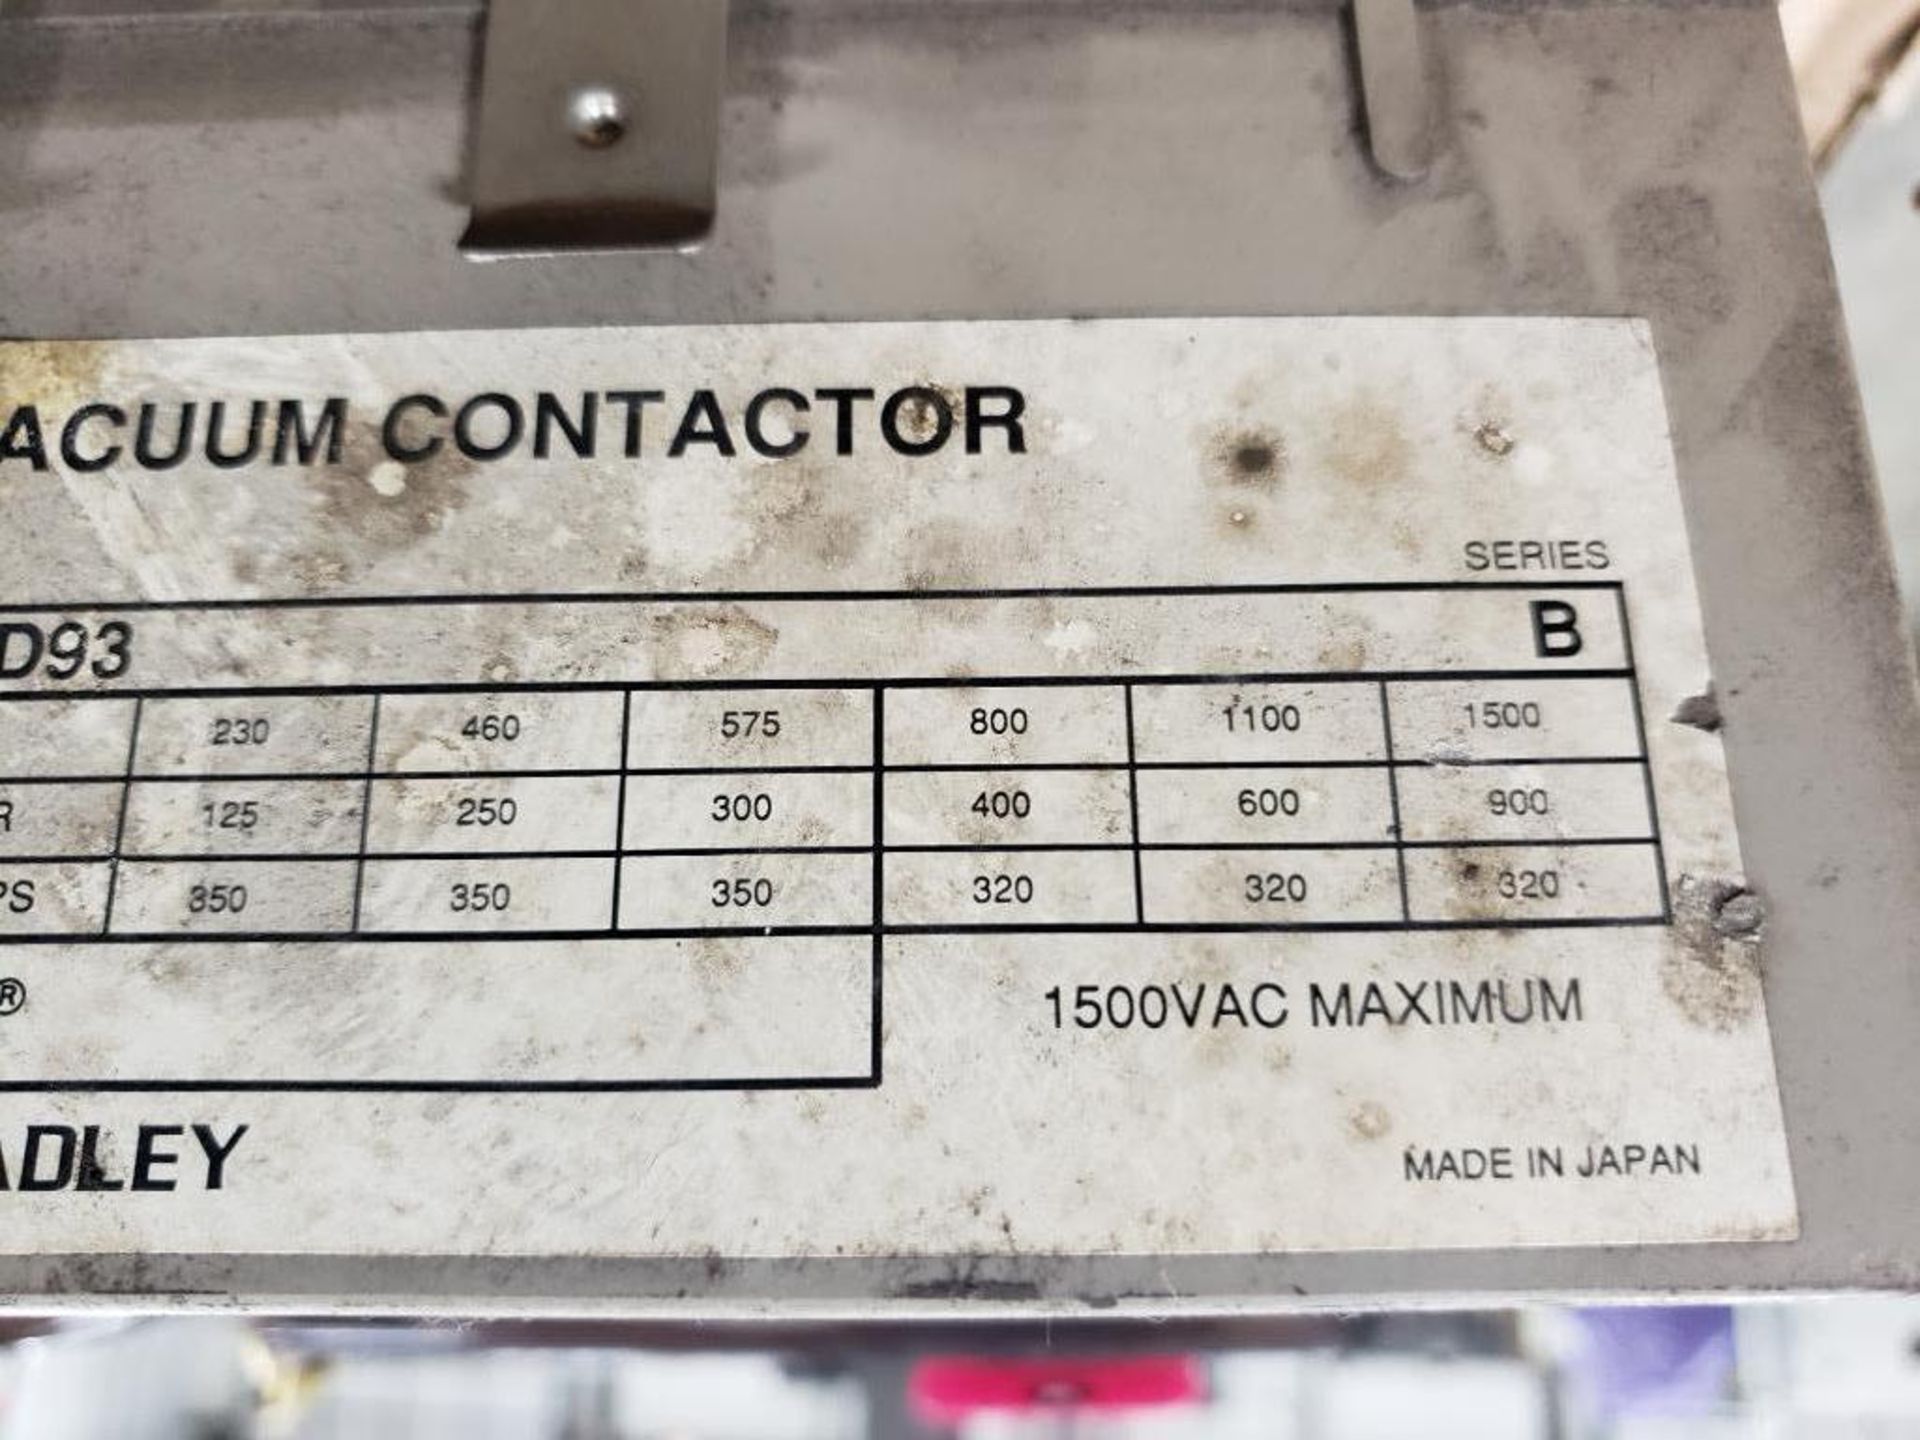 Allen Bradley vacuum contactor 1100-BOD93. - Image 6 of 10